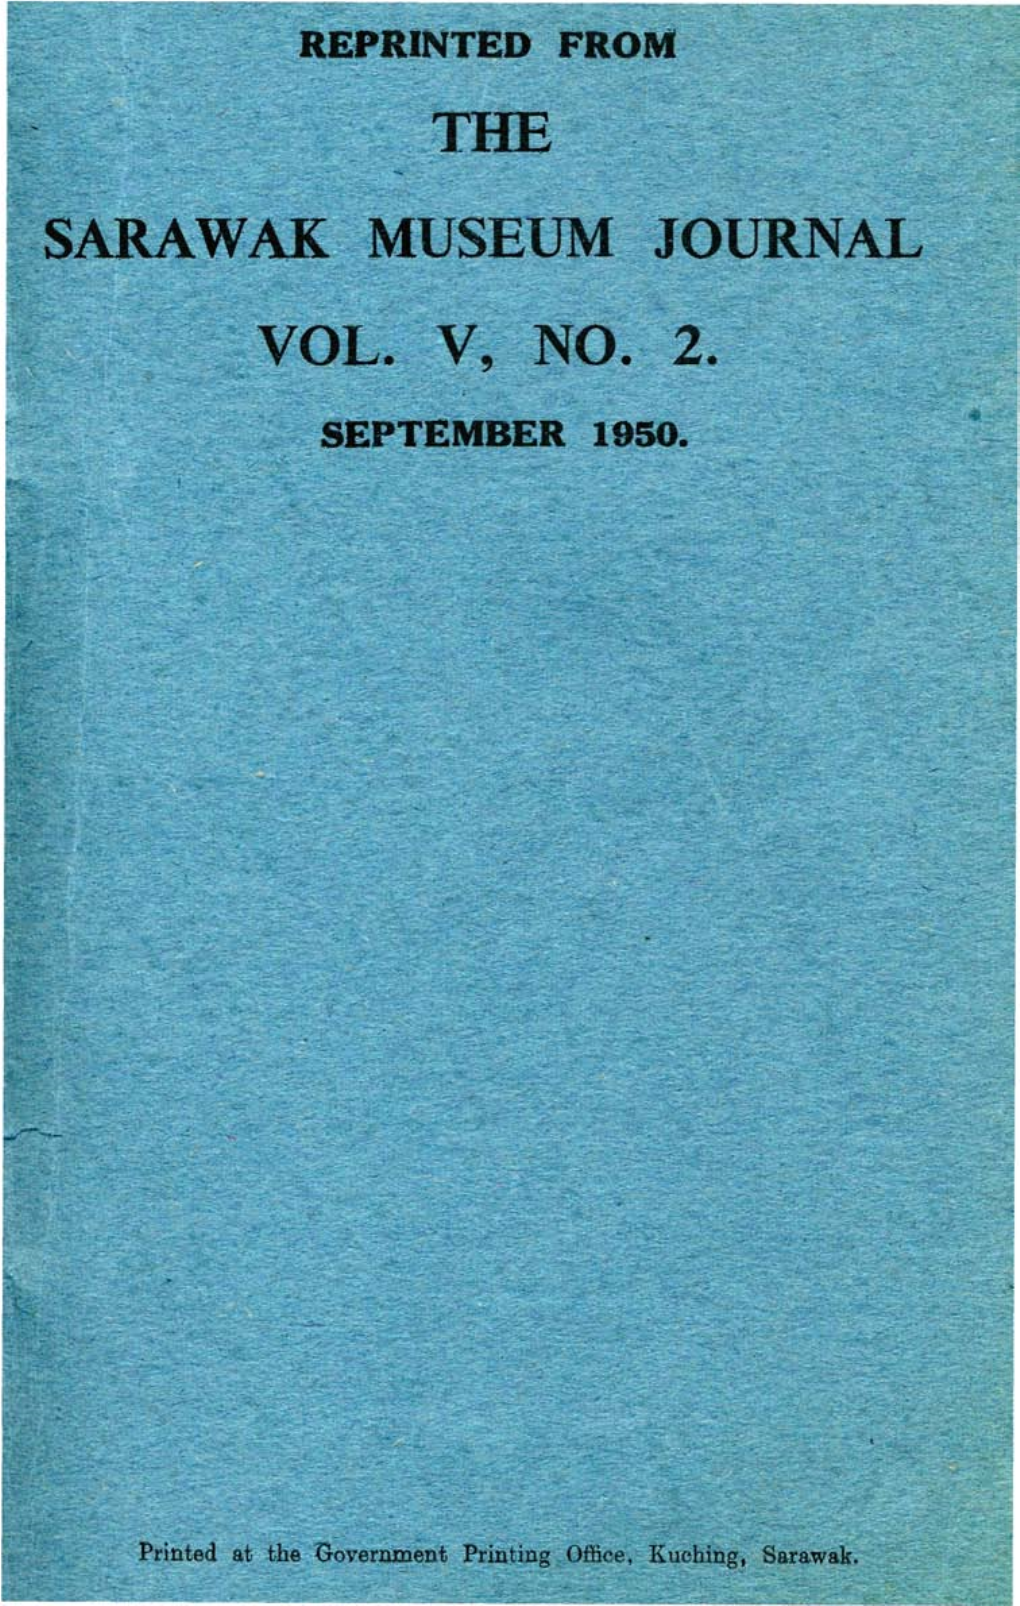 The Sarawak Museum Journal Vol. V, No. 2. September 1950